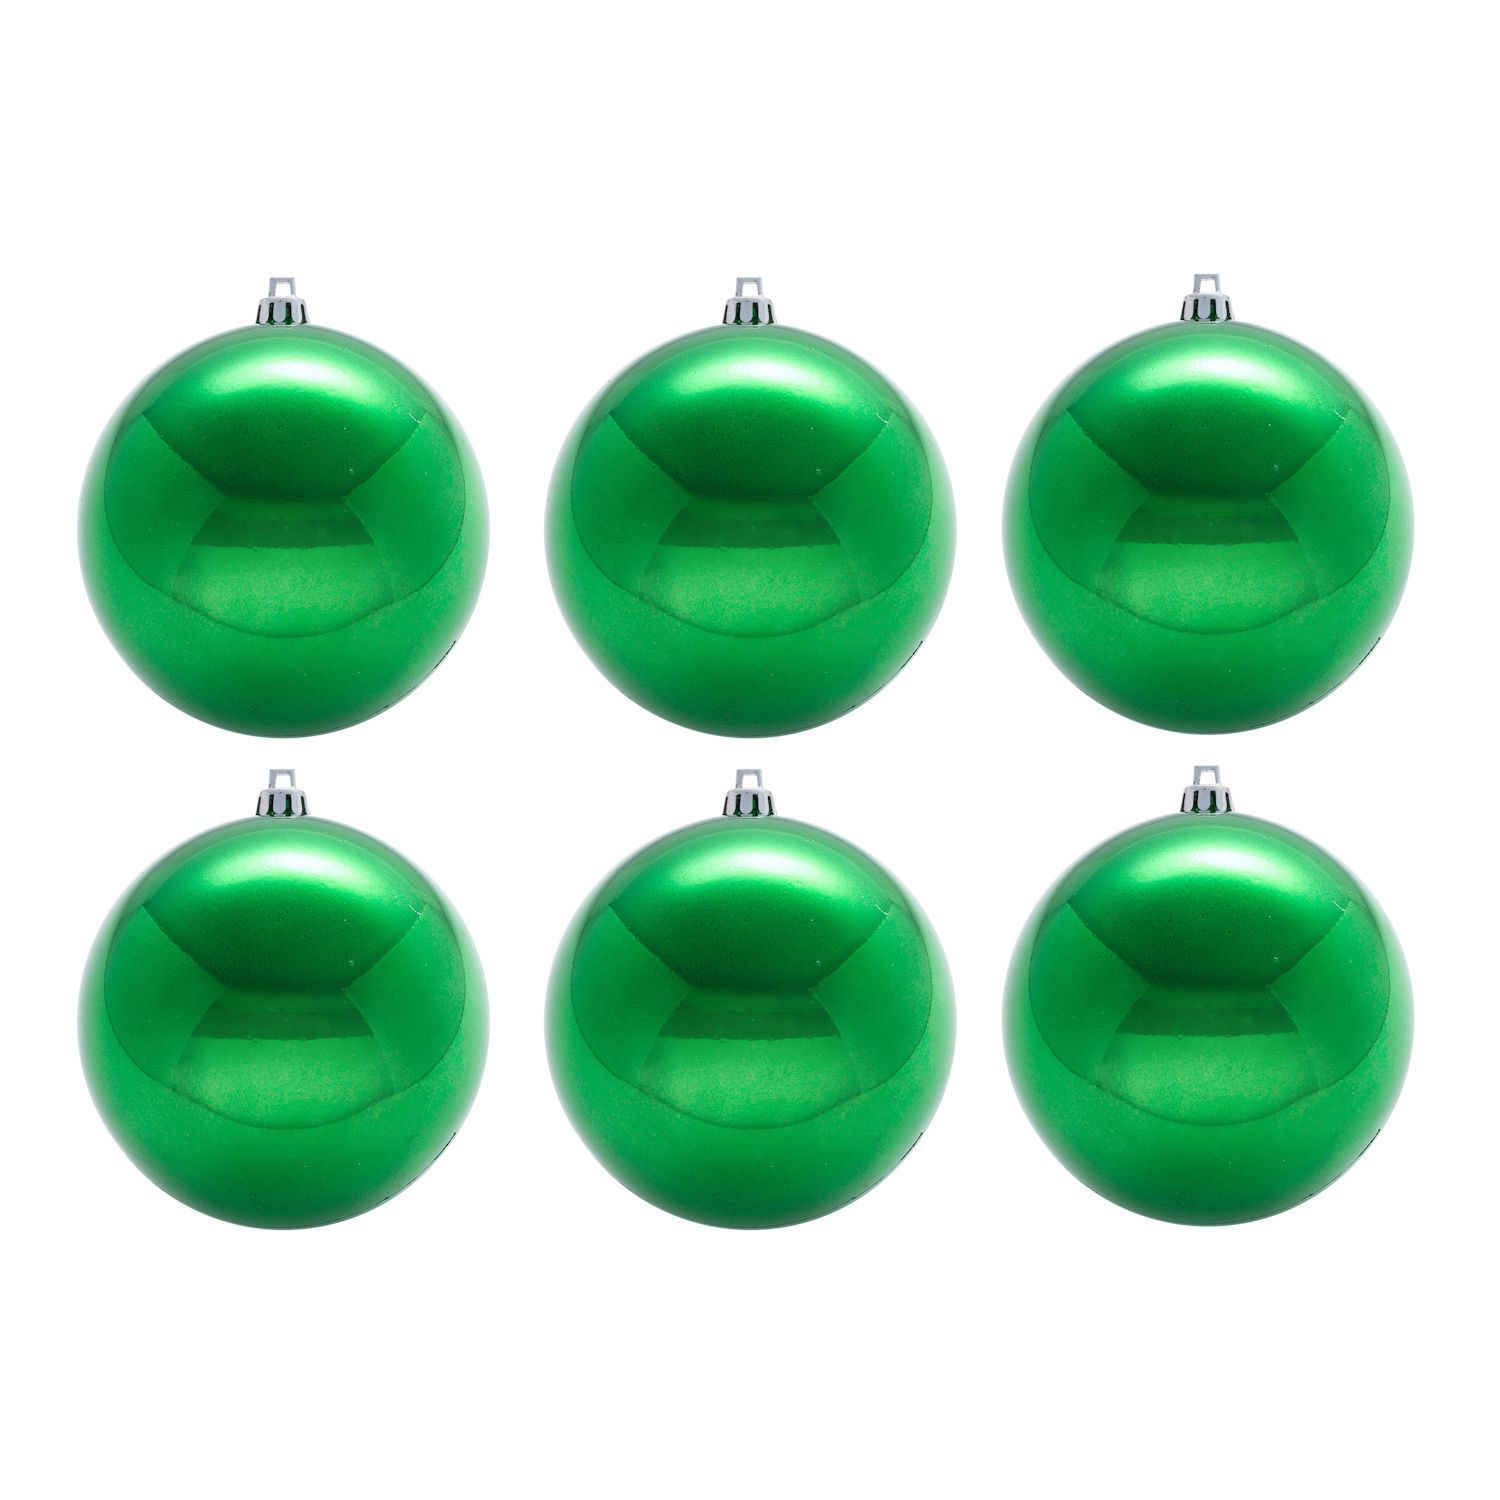 Елочные шарики Brenton Цвет: Зеленый (8 см - 6 шт), размер 8 см - 6 шт snw225166 Елочные шарики Brenton Цвет: Зеленый (8 см - 6 шт) - фото 1